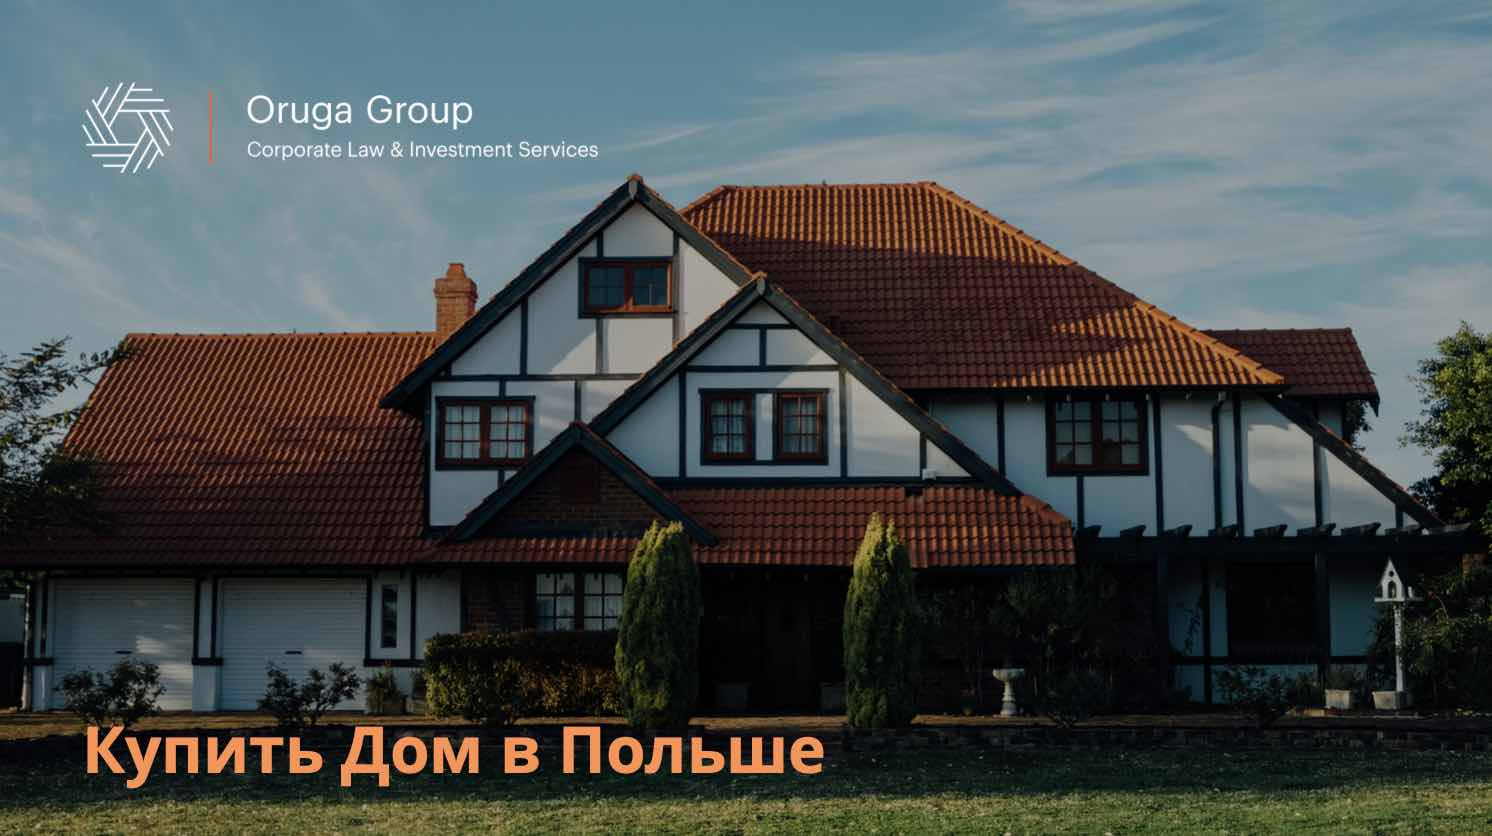 Продам дом в польше продажа мини отелей в москве